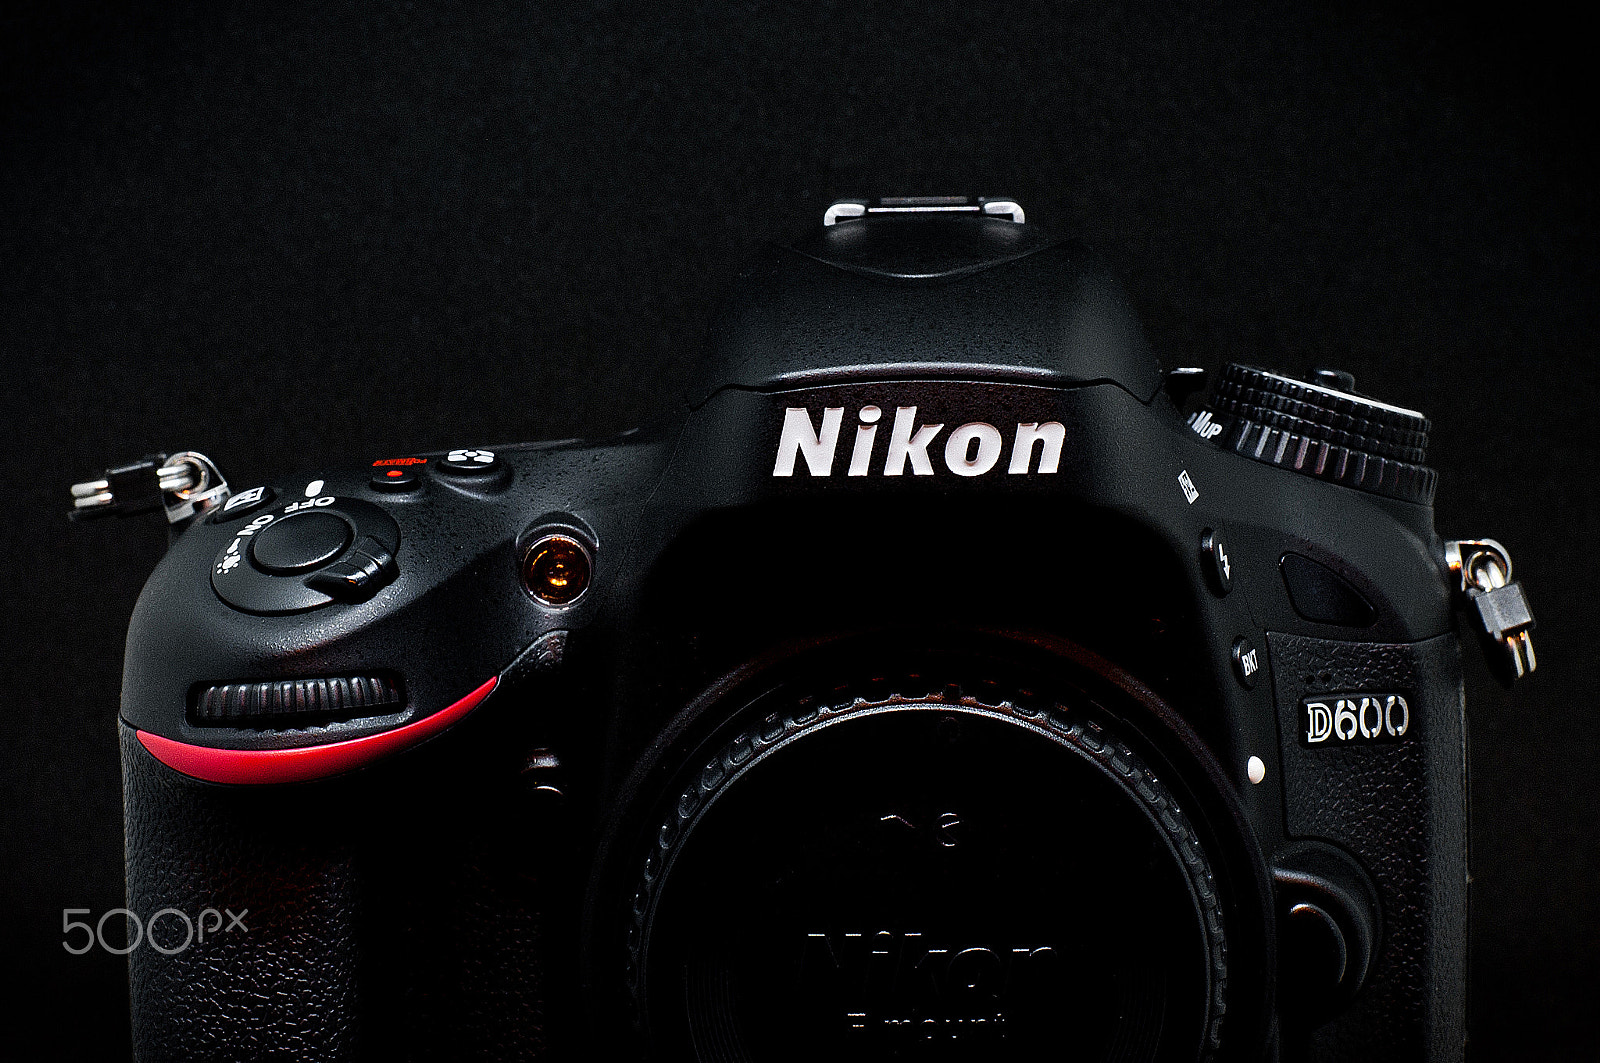 AF-S DX VR Zoom-Nikkor 18-55mm f/3.5-5.6G + 2.8x sample photo. Nikon d600 photography